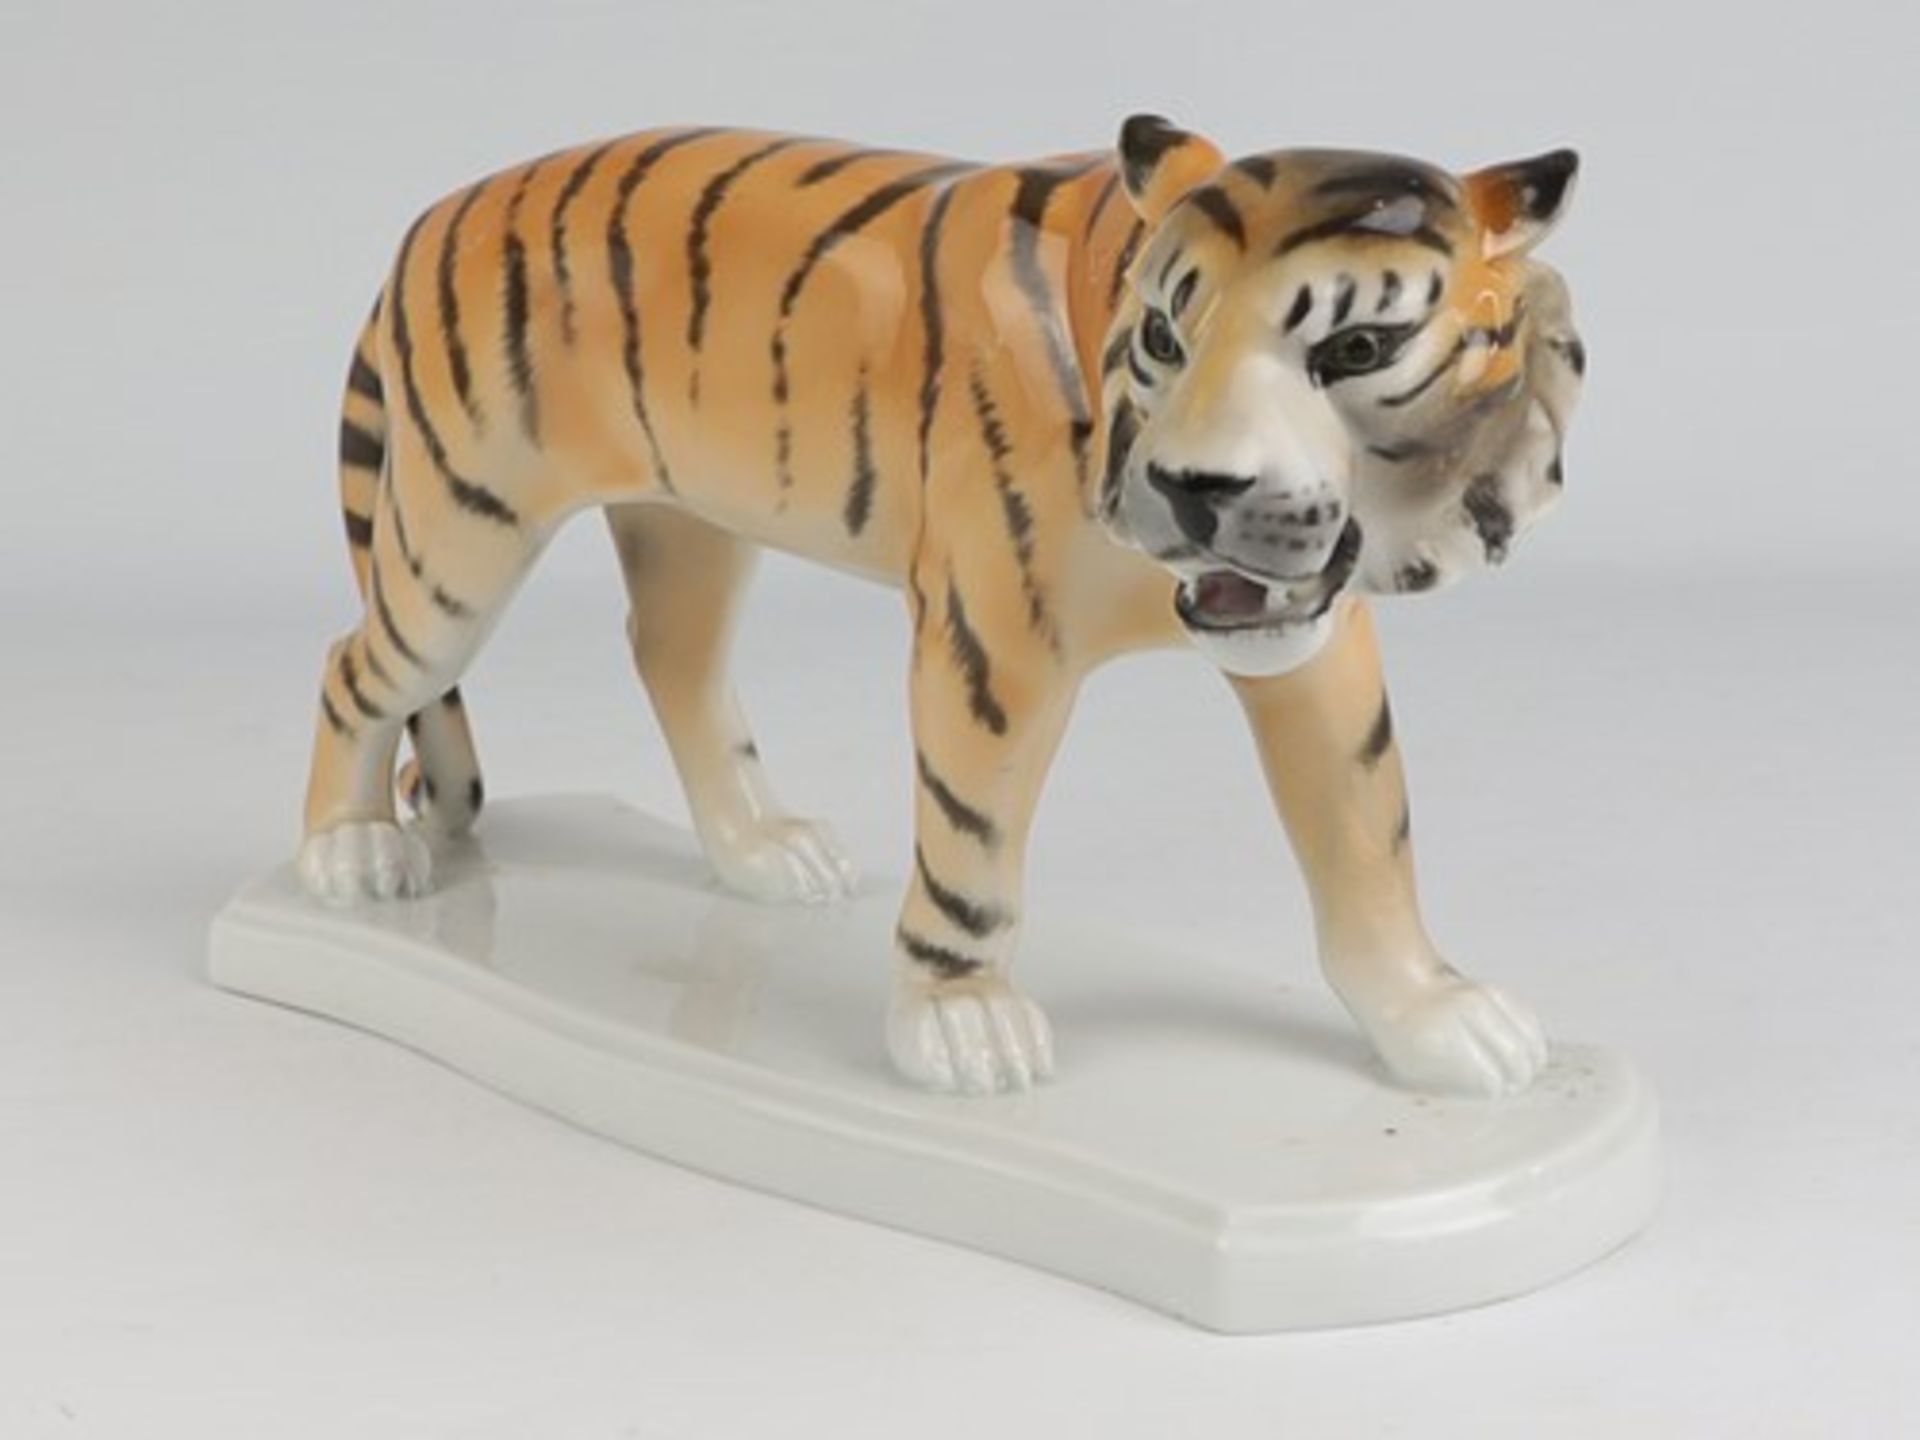 Fasold & Stauch - Figurgrüne Marke, Modellnr. 16328, geschwungener Stand, stehender Tiger, min. - Bild 2 aus 6